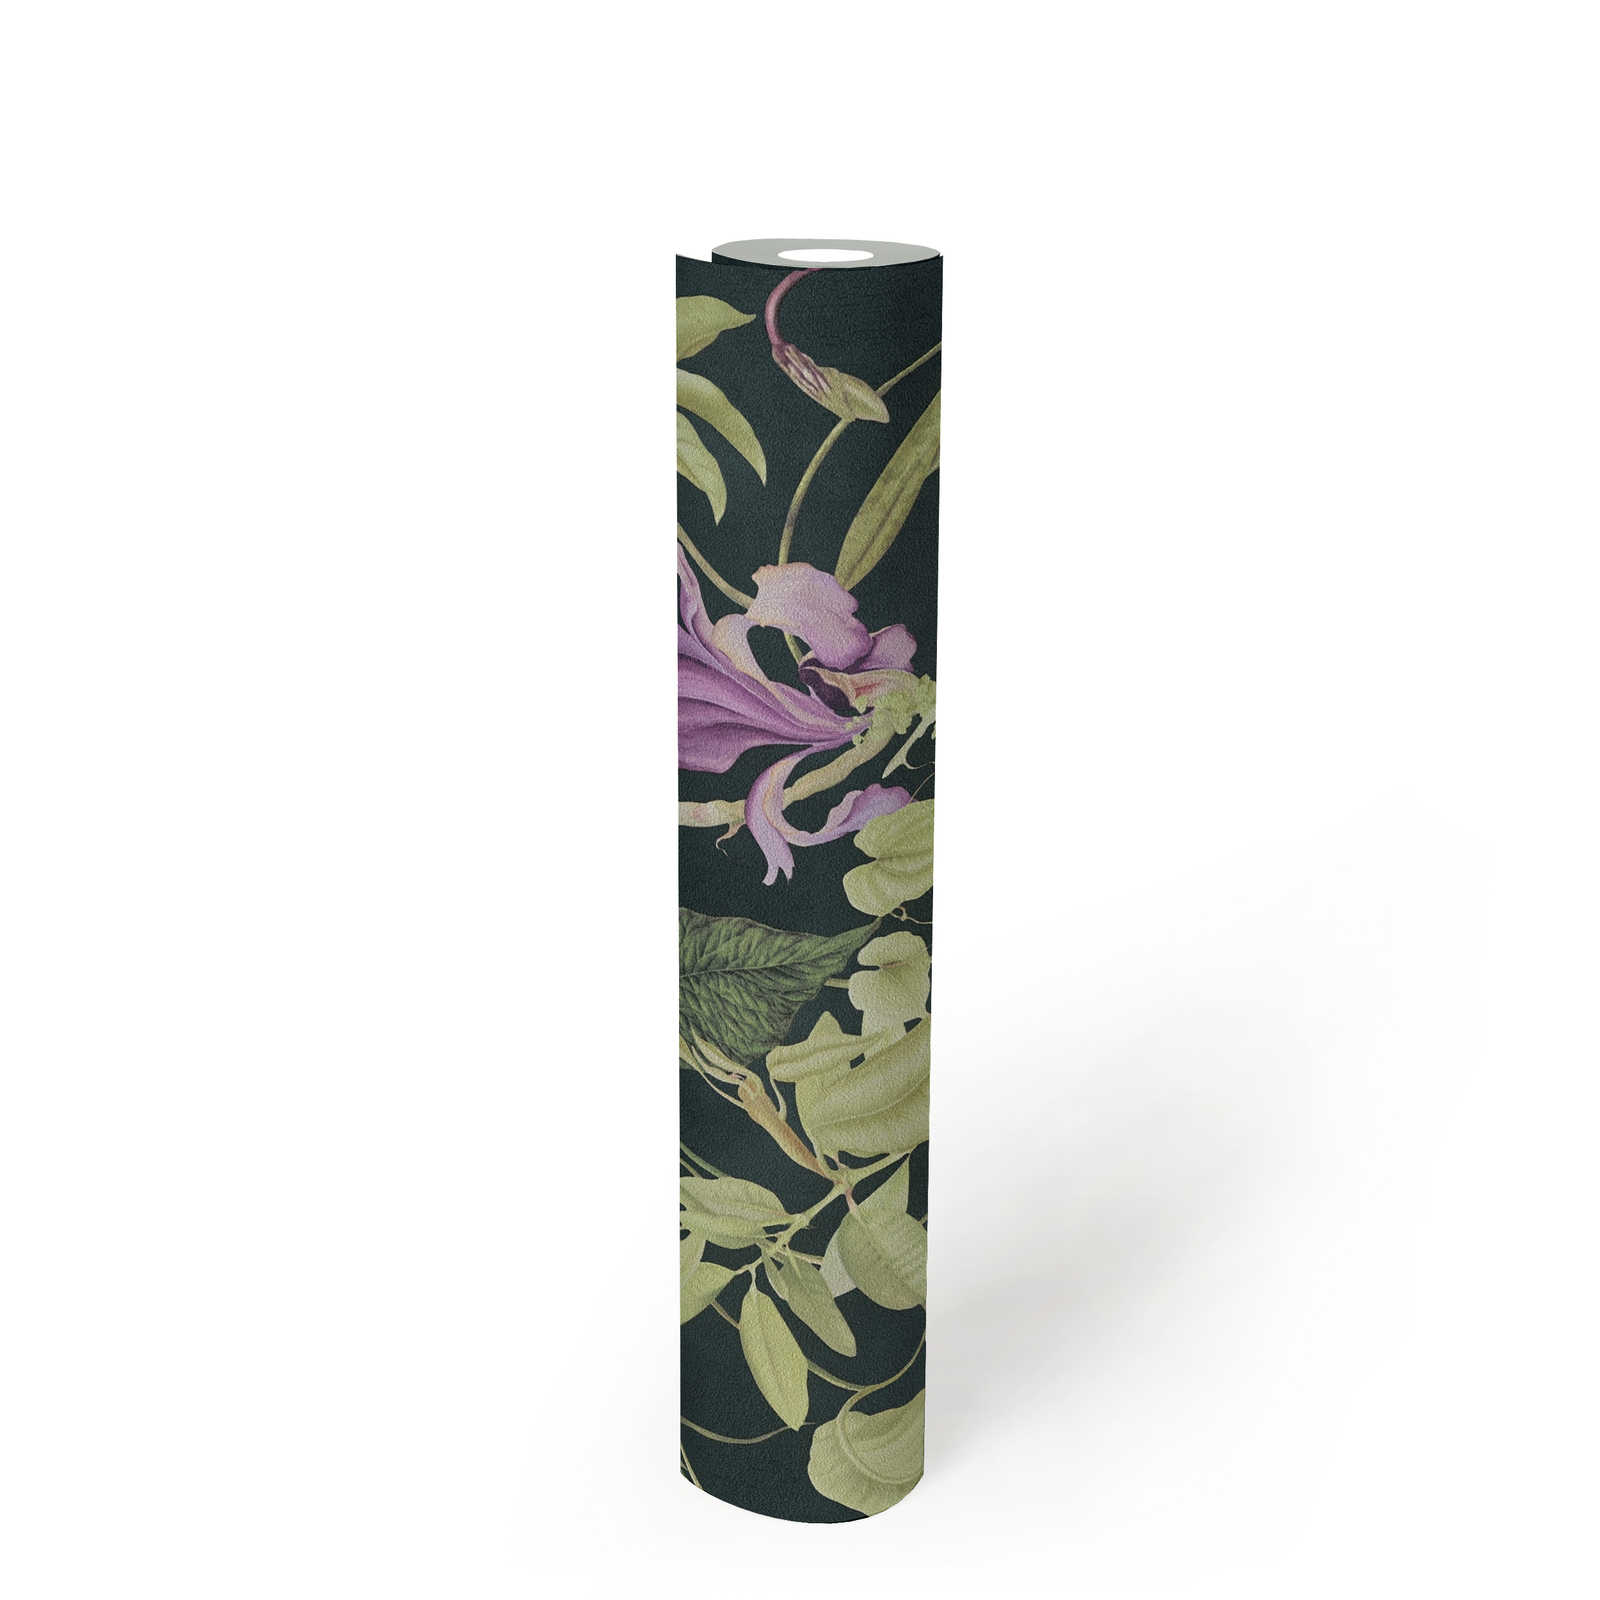             Tropisch bloemenbehang Design by MICHALSKY - Groen, Zwart
        